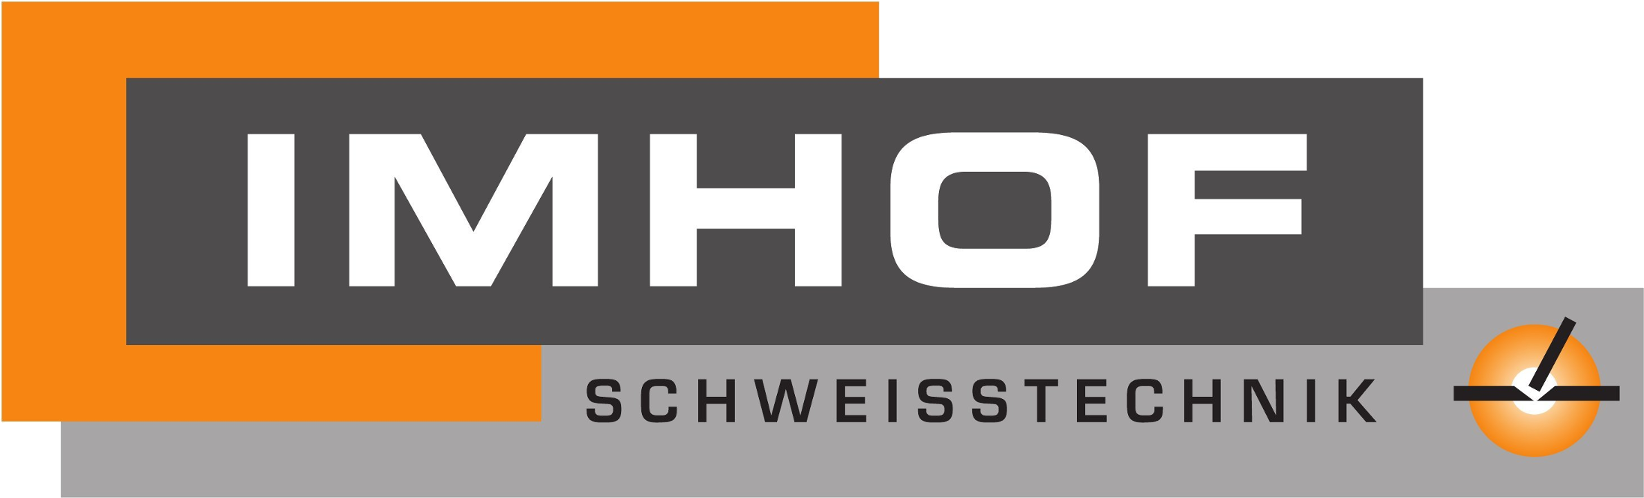 Imhof Schweisstechnik GmbH